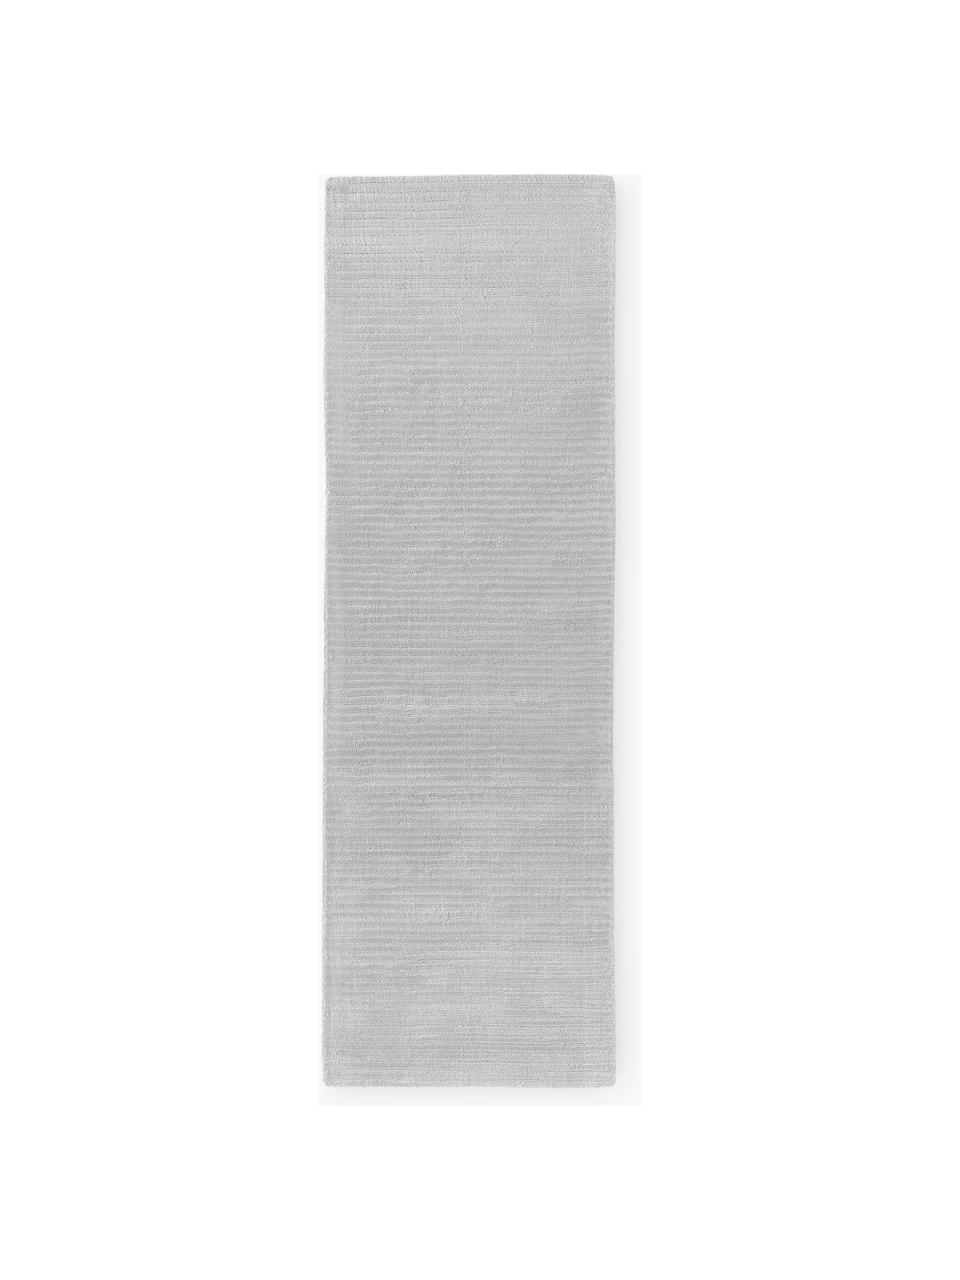 Tapis de couloir moelleux tissé main Wes, 100 % polyester, certifié GRS, Gris clair, larg. 80 x long. 200 cm